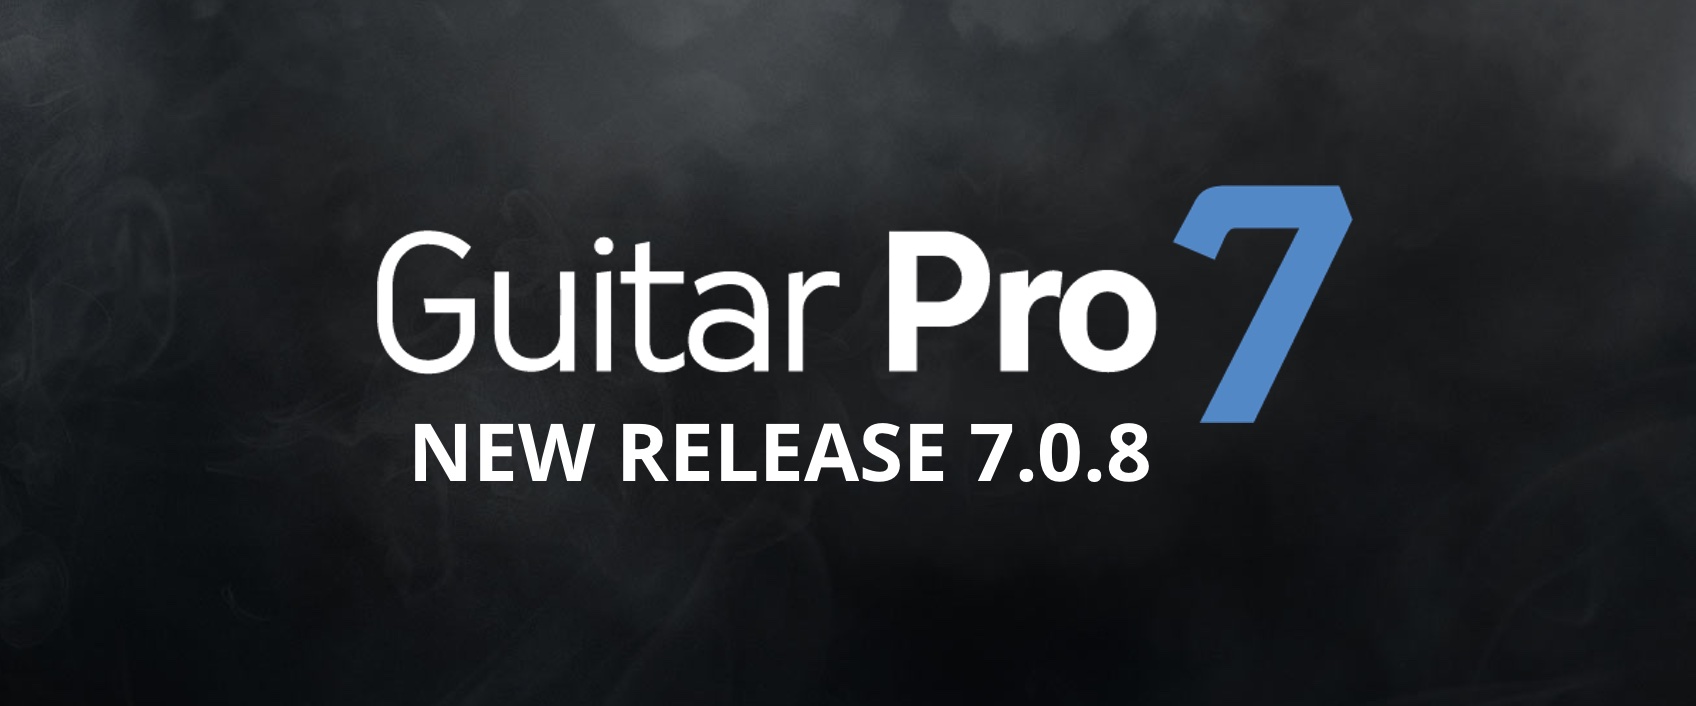 guitar pro 7 free download